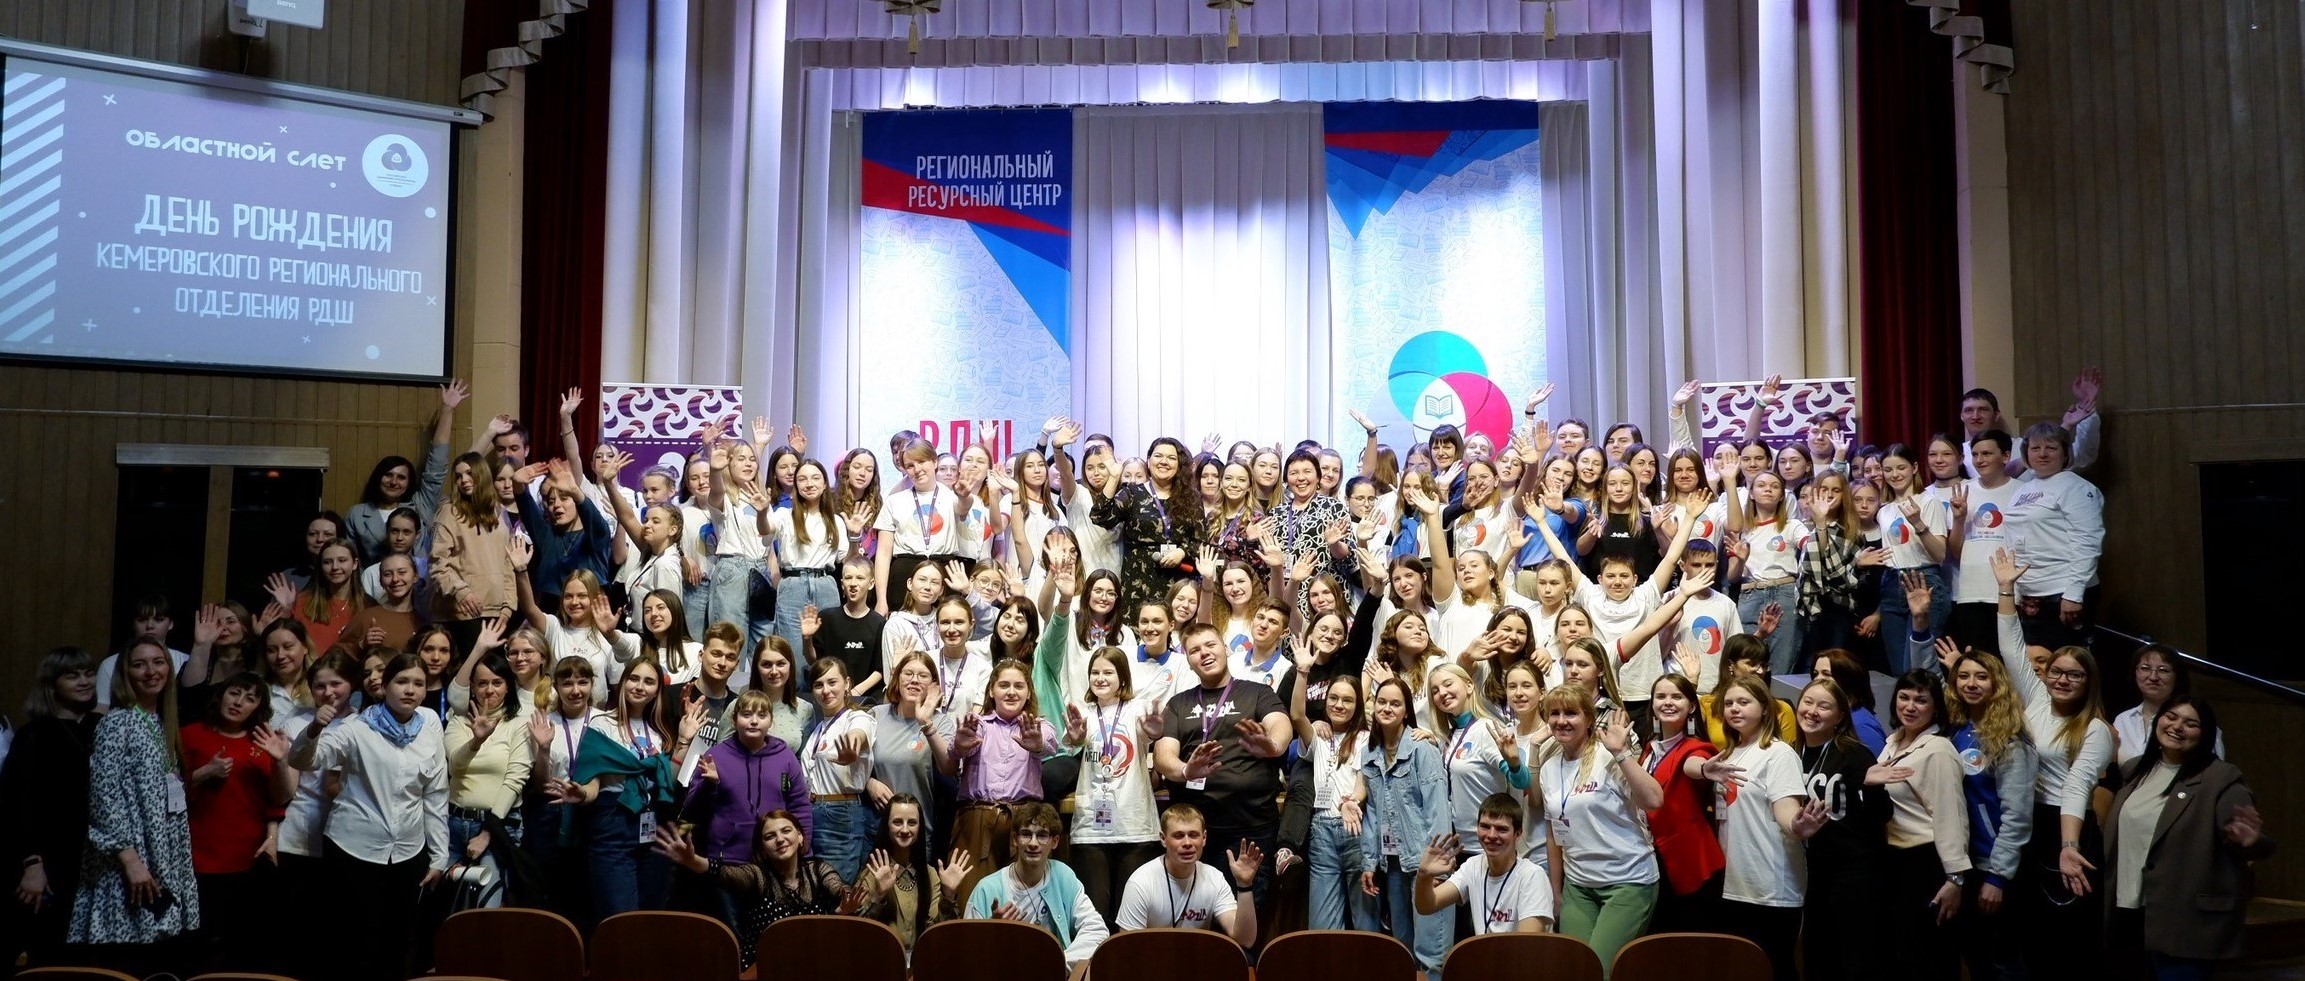 Шестилетие Кемеровского регионального отделения РДШ отпраздновали 11 апреля